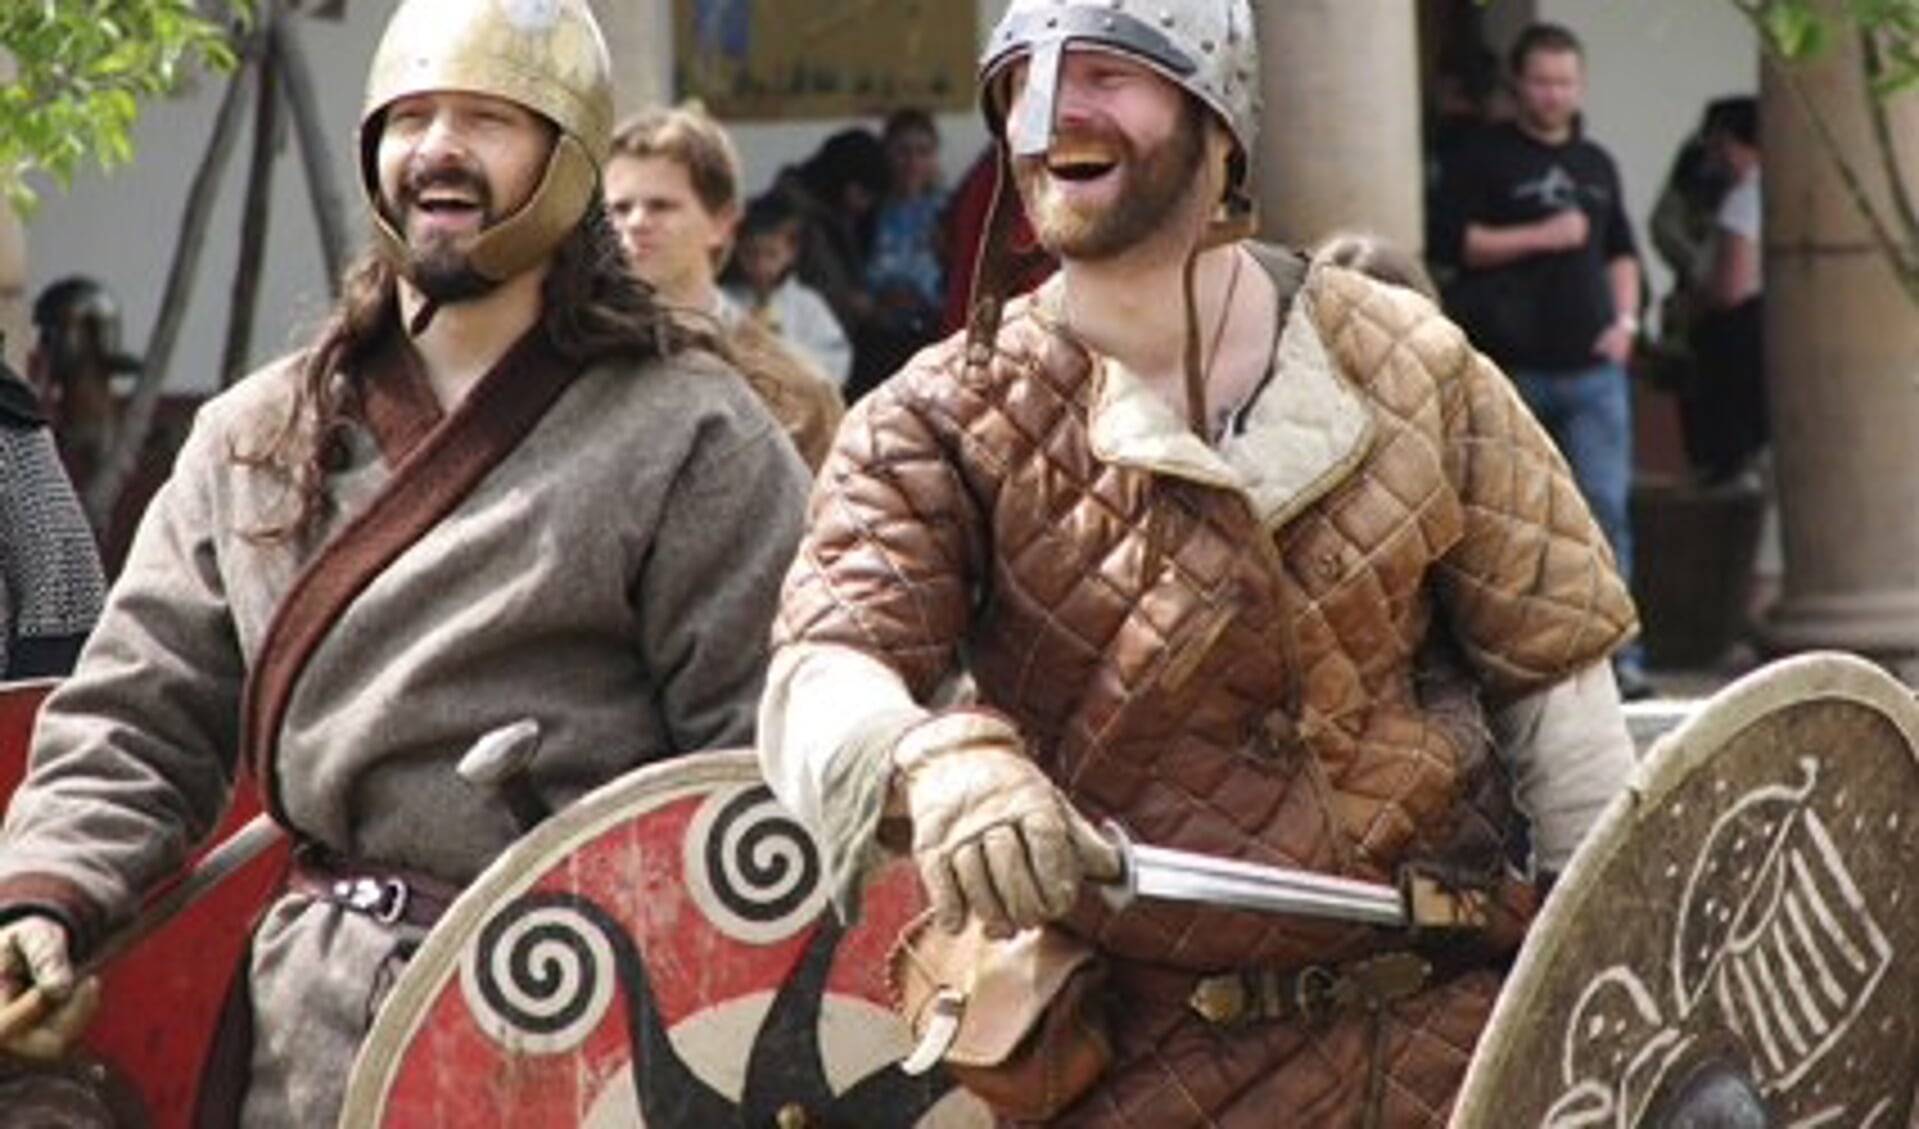 De Vikingen in Archeon zijn vredelievend. 